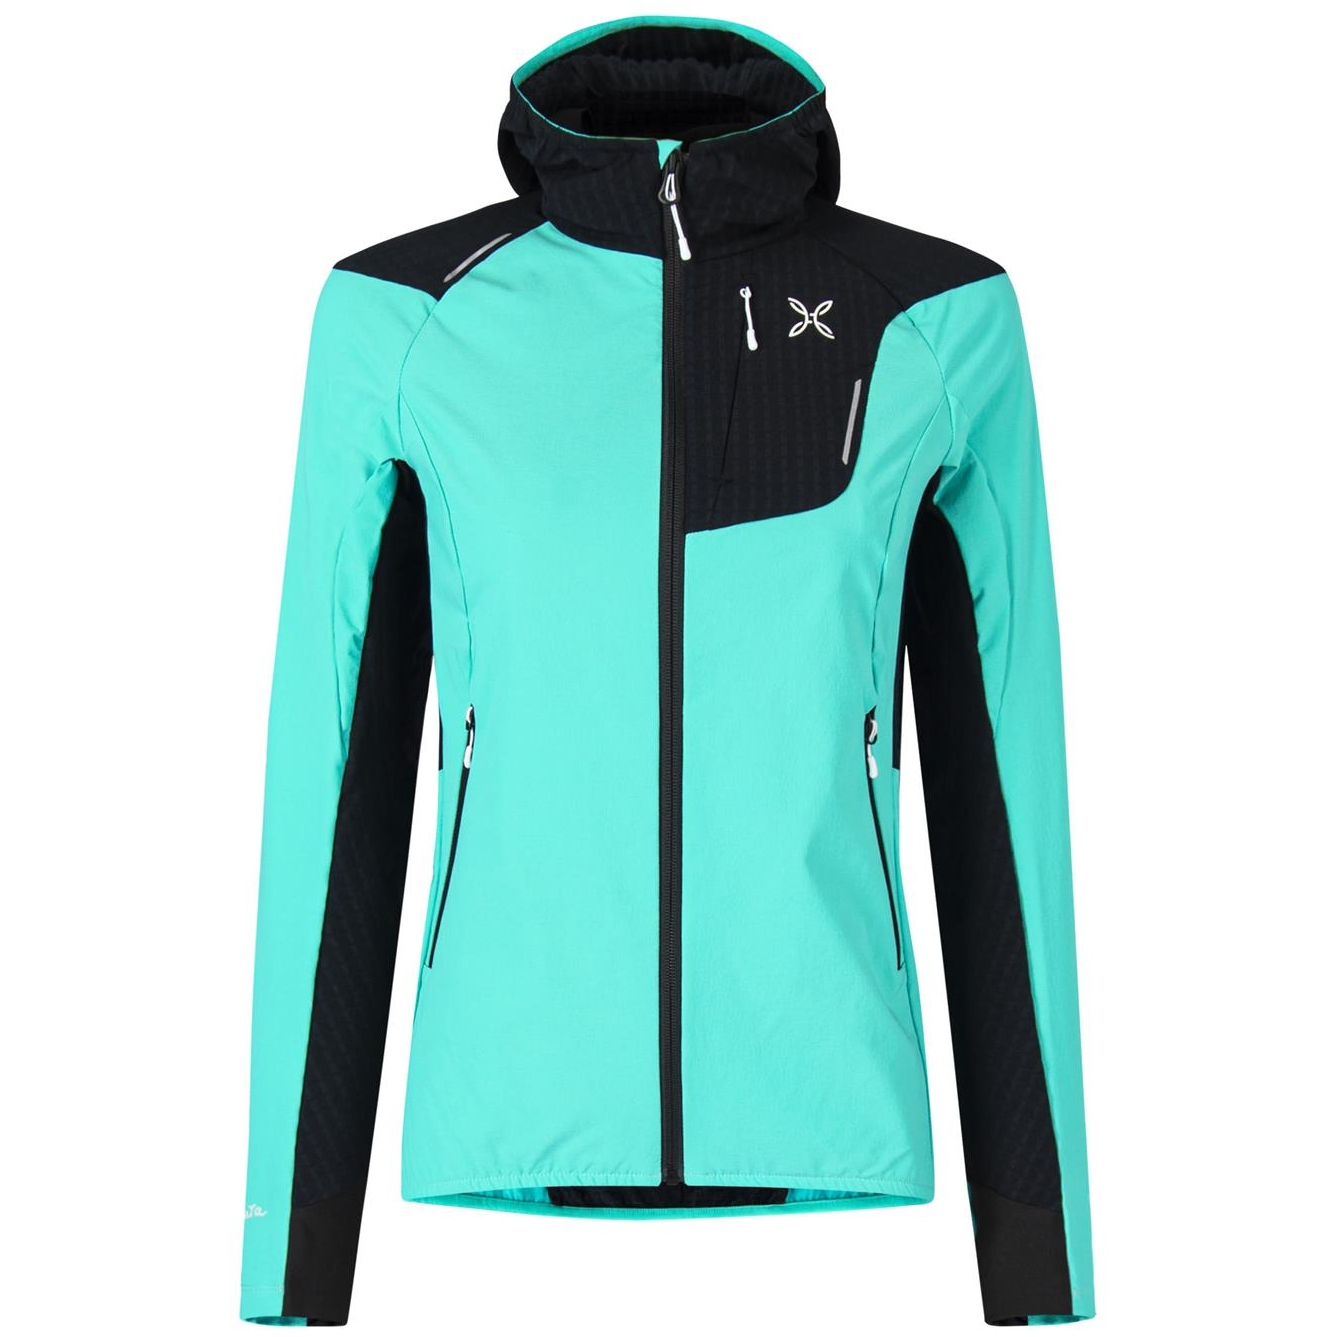 Produktbild von Montura Ski Style 2 Jacke Damen - care blue 28